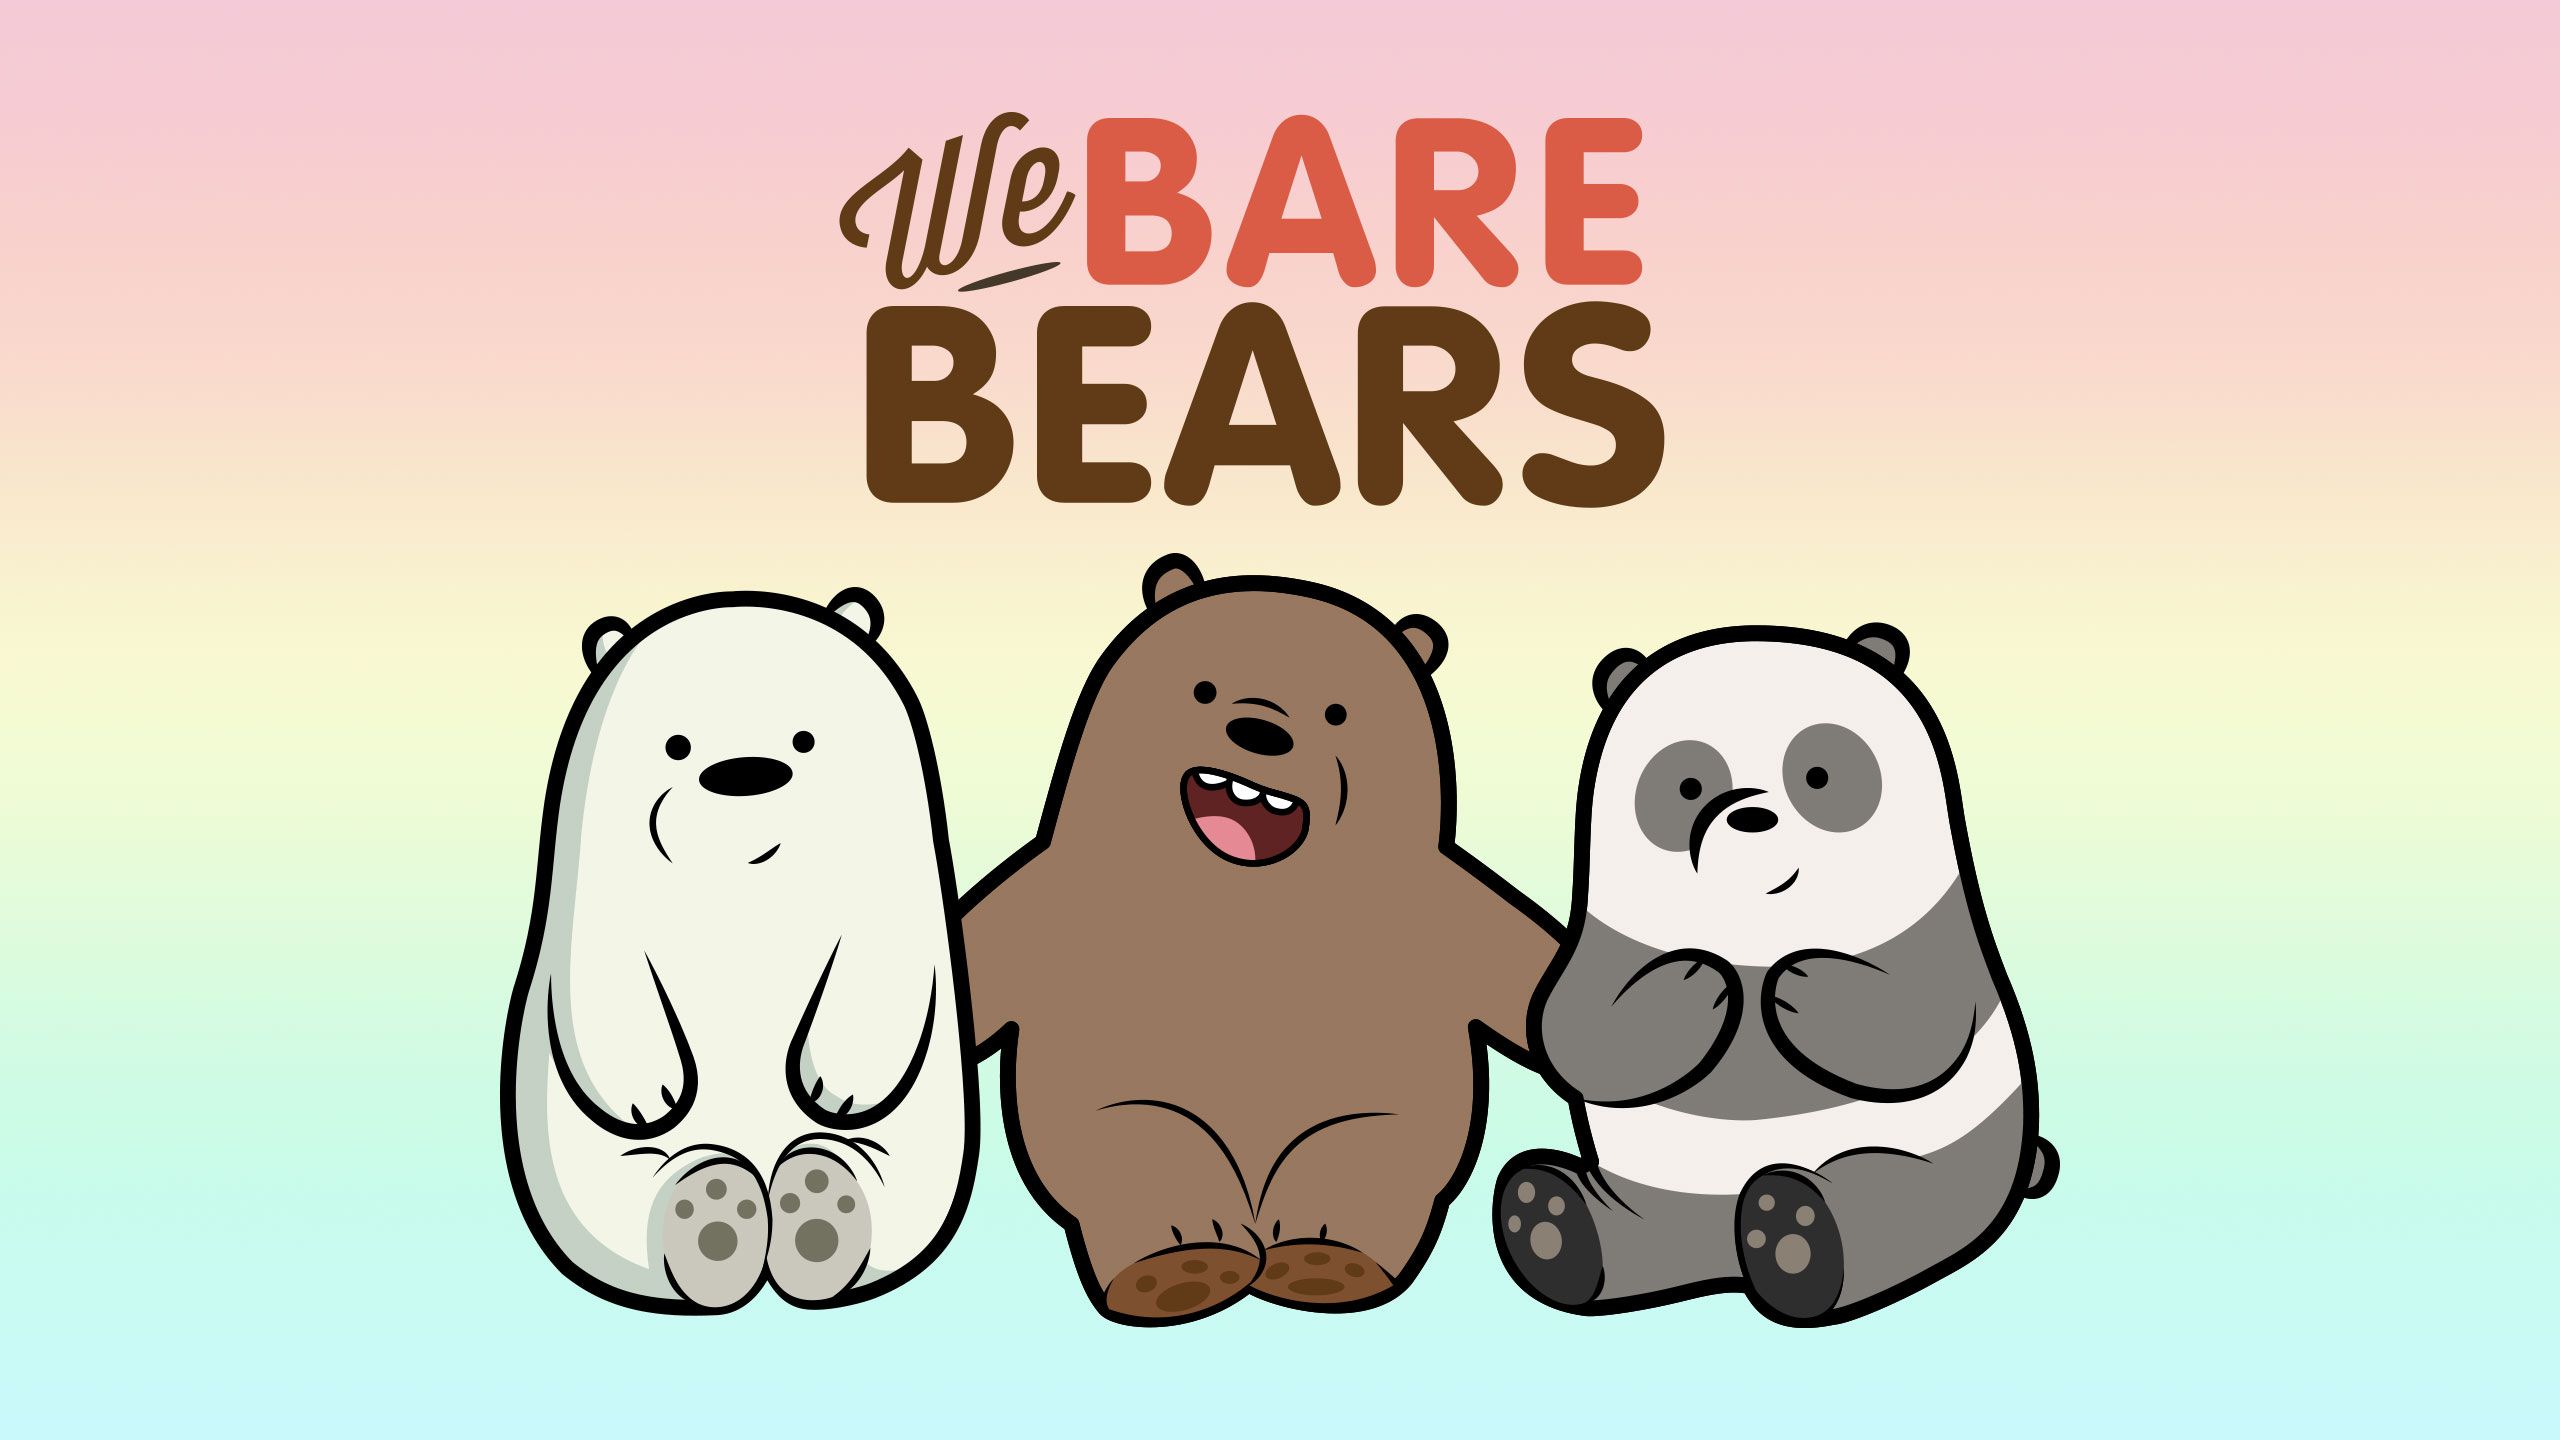 We Bare Bears Desktop / Mobile Wallpaper & Vector Ai / EPS. We bare bears wallpaper, Bare bears, We bare bears